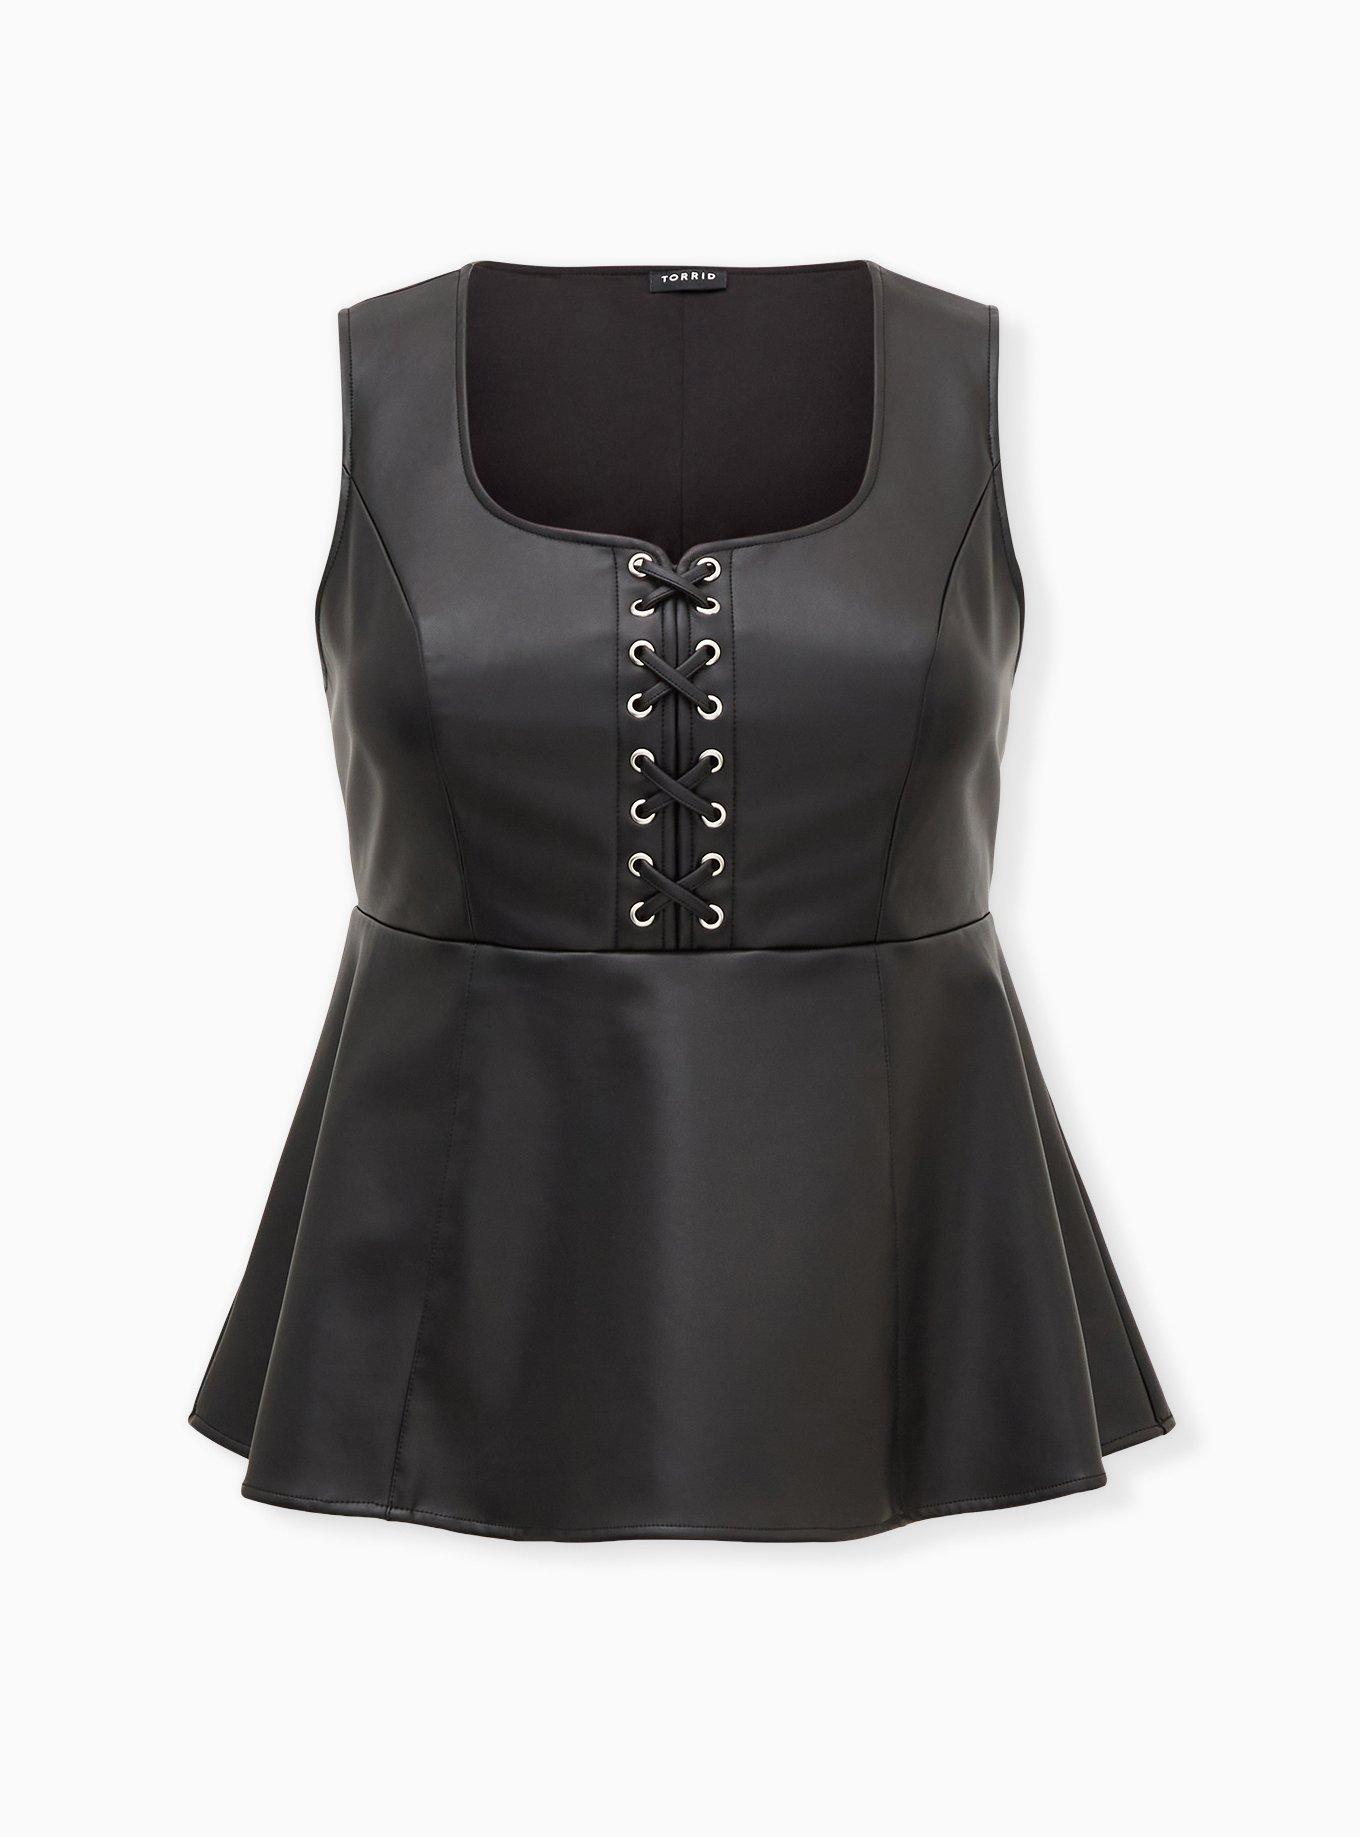 Torrid Edgy Black Faux Leather & Mesh Bodysuit Plus Size 1X, 14/16